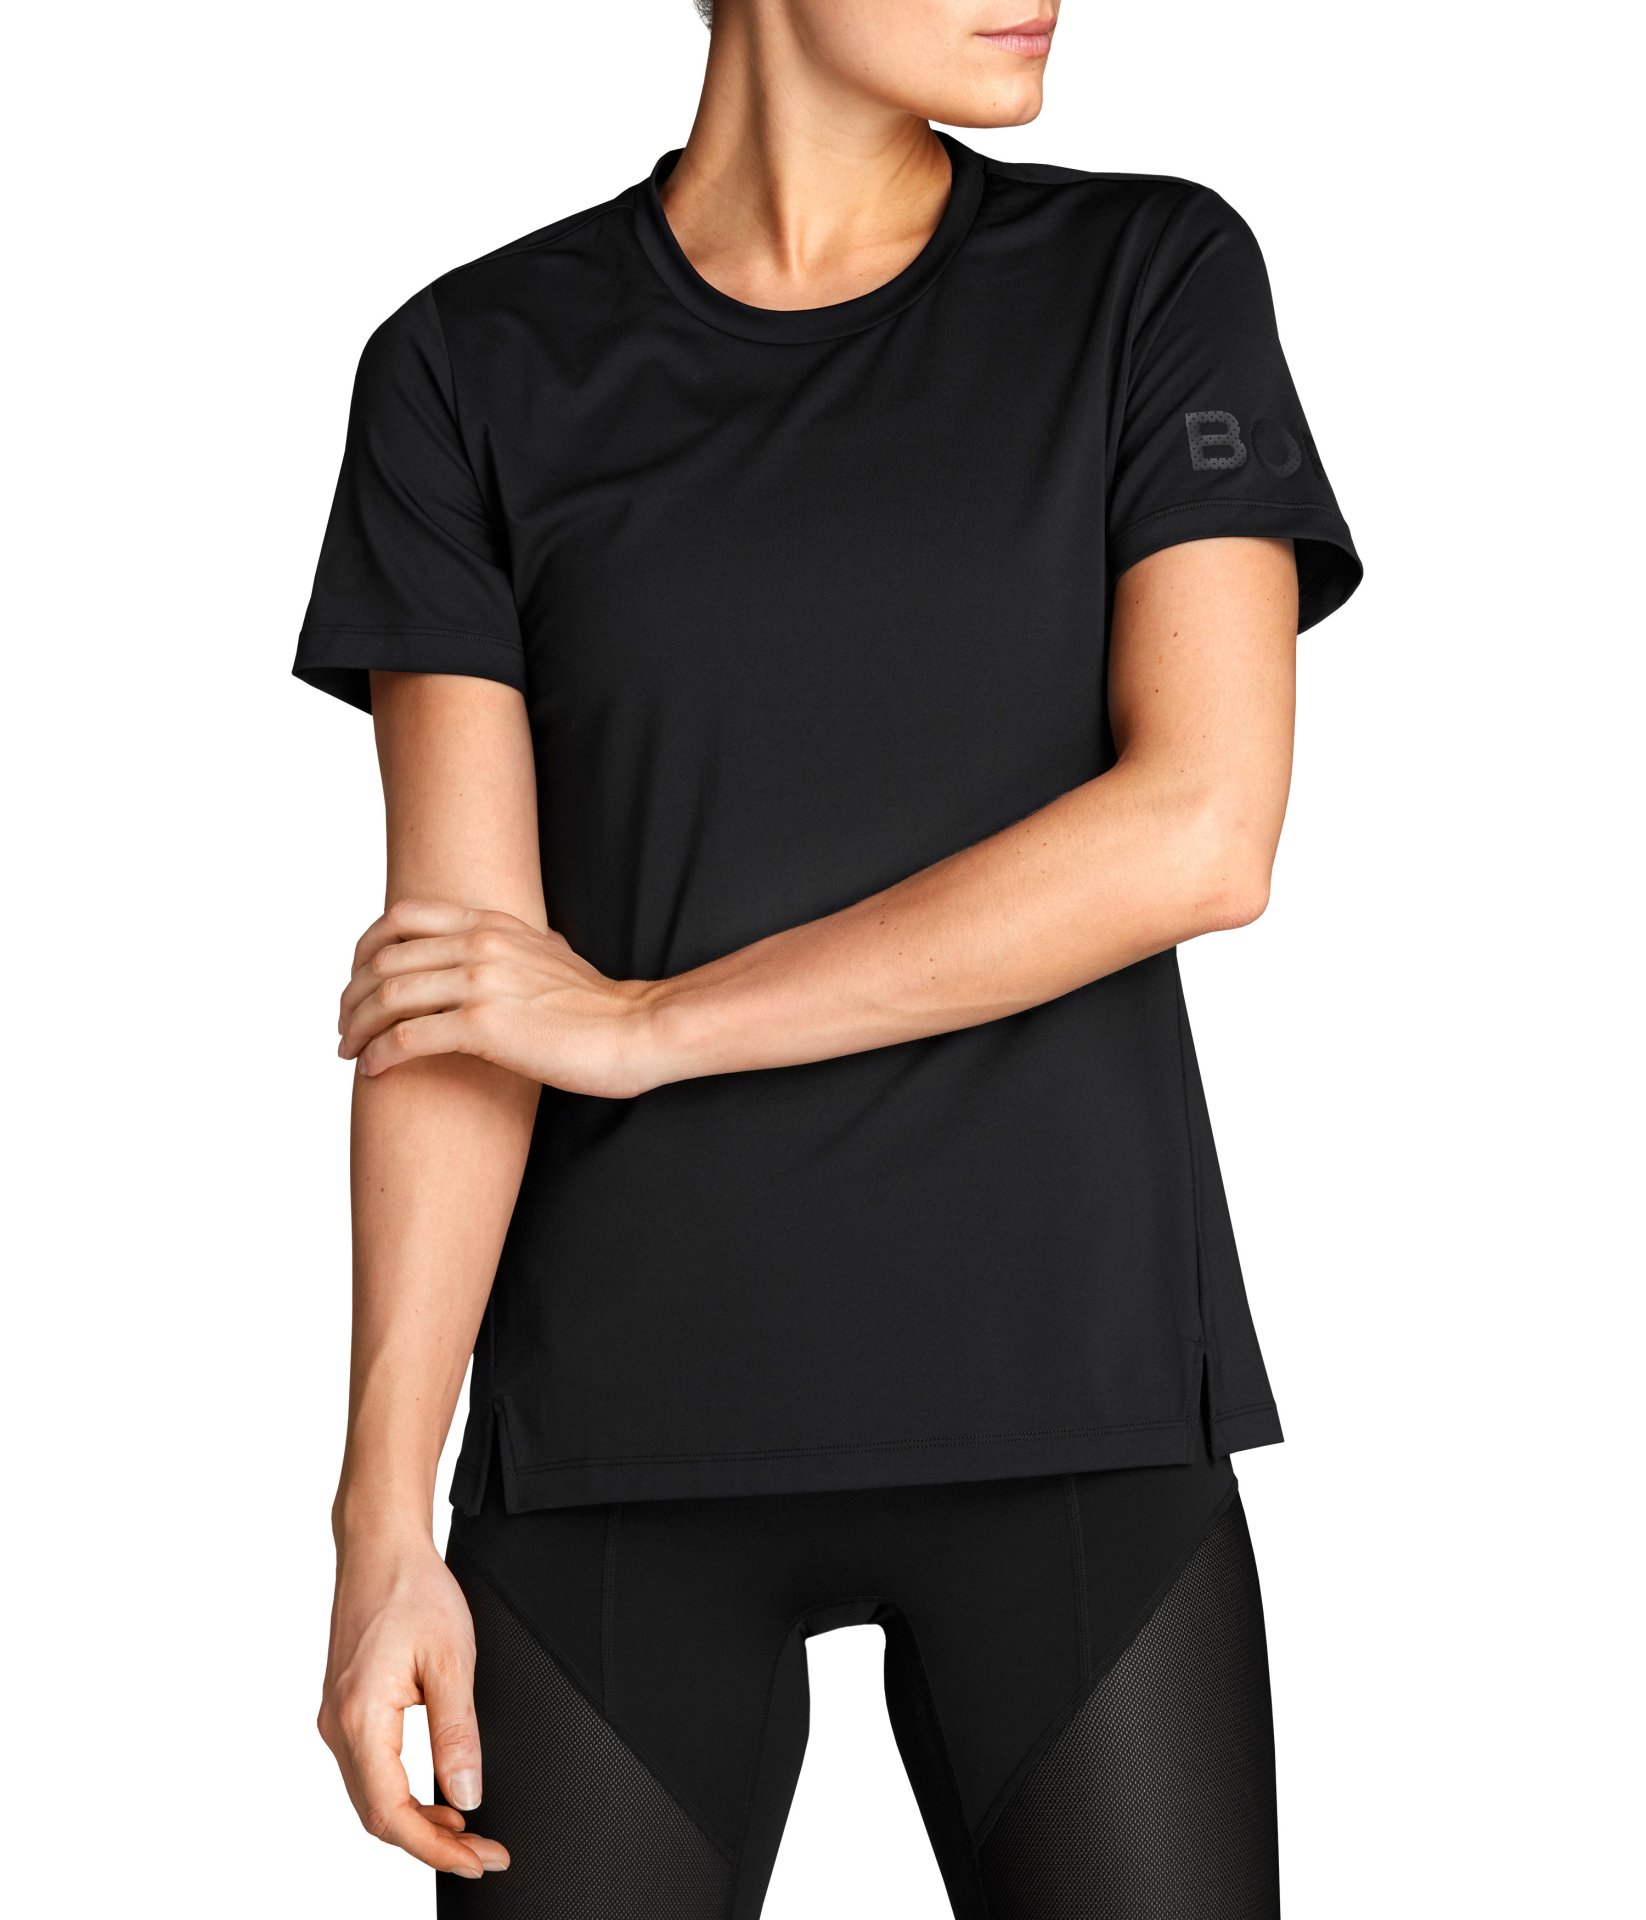 Γυναικεία/Ρούχα/Αθλητικά/T-shirt-Τοπ BJORN BORG - Γυναικείο αθλητικό t-shirt BJORN BORG CATO μαύρο